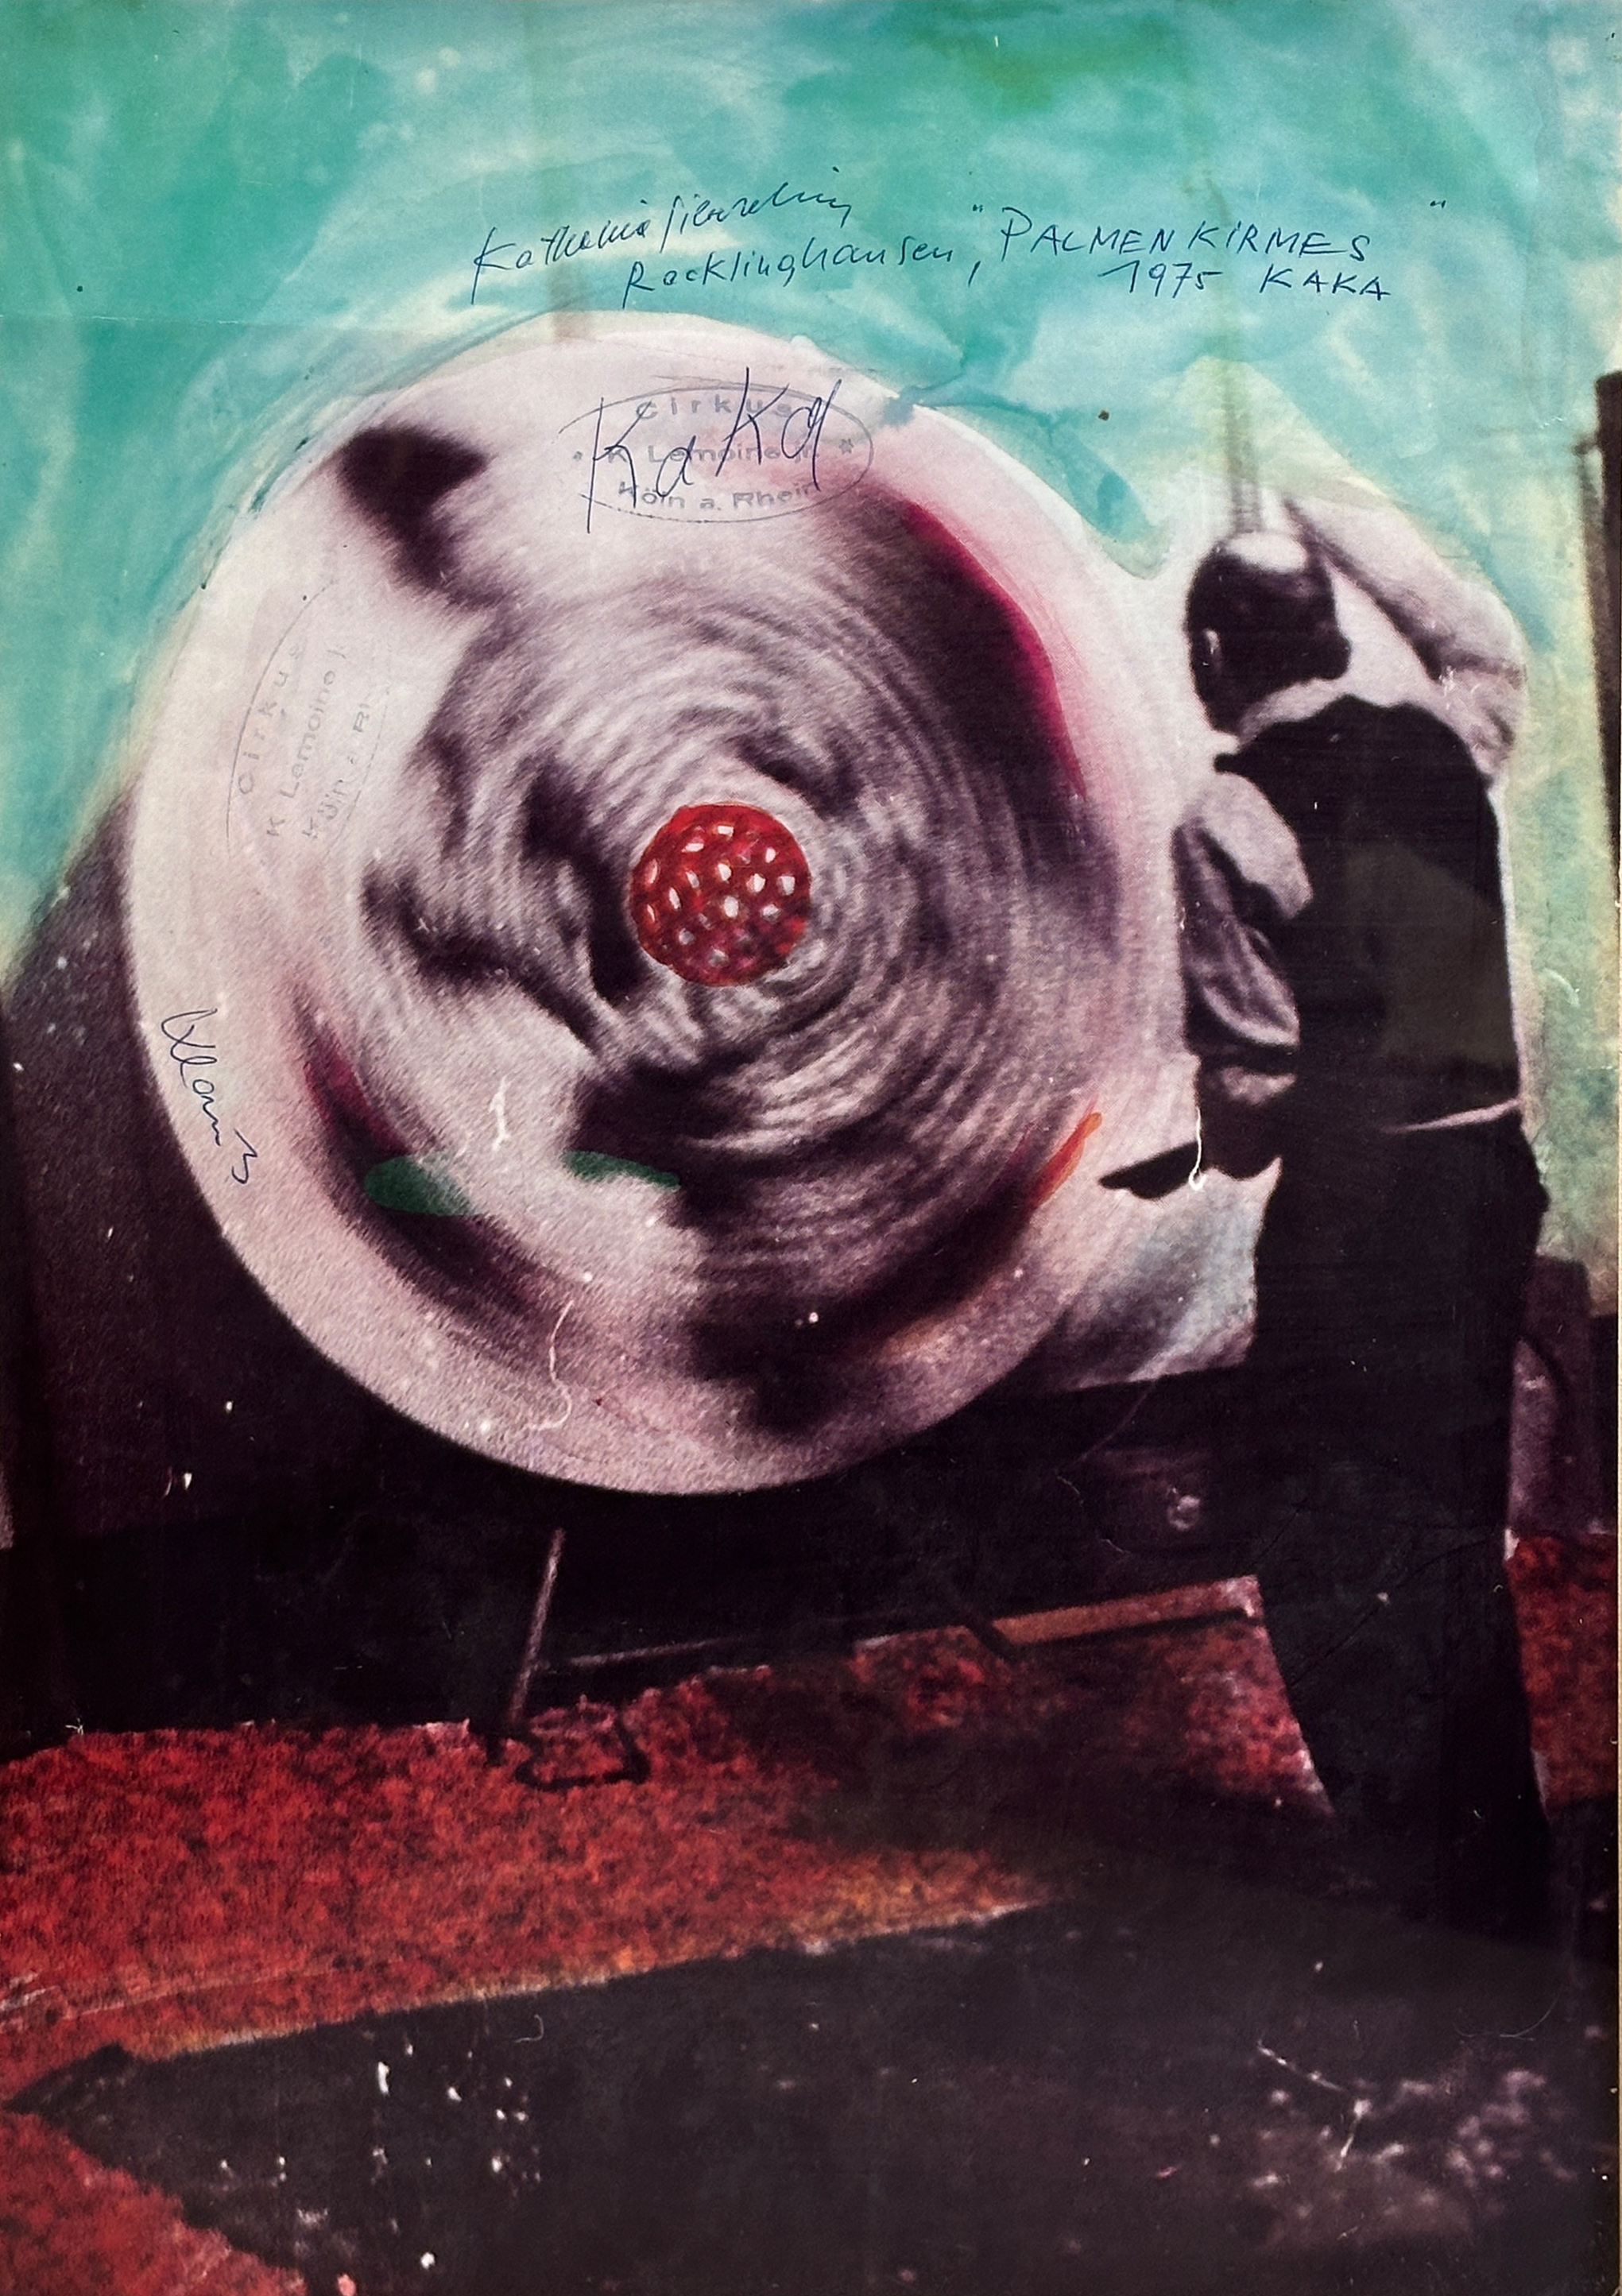 Sigmar POLKE (1941 - 2020). Poster. "Knife thrower". 1975.